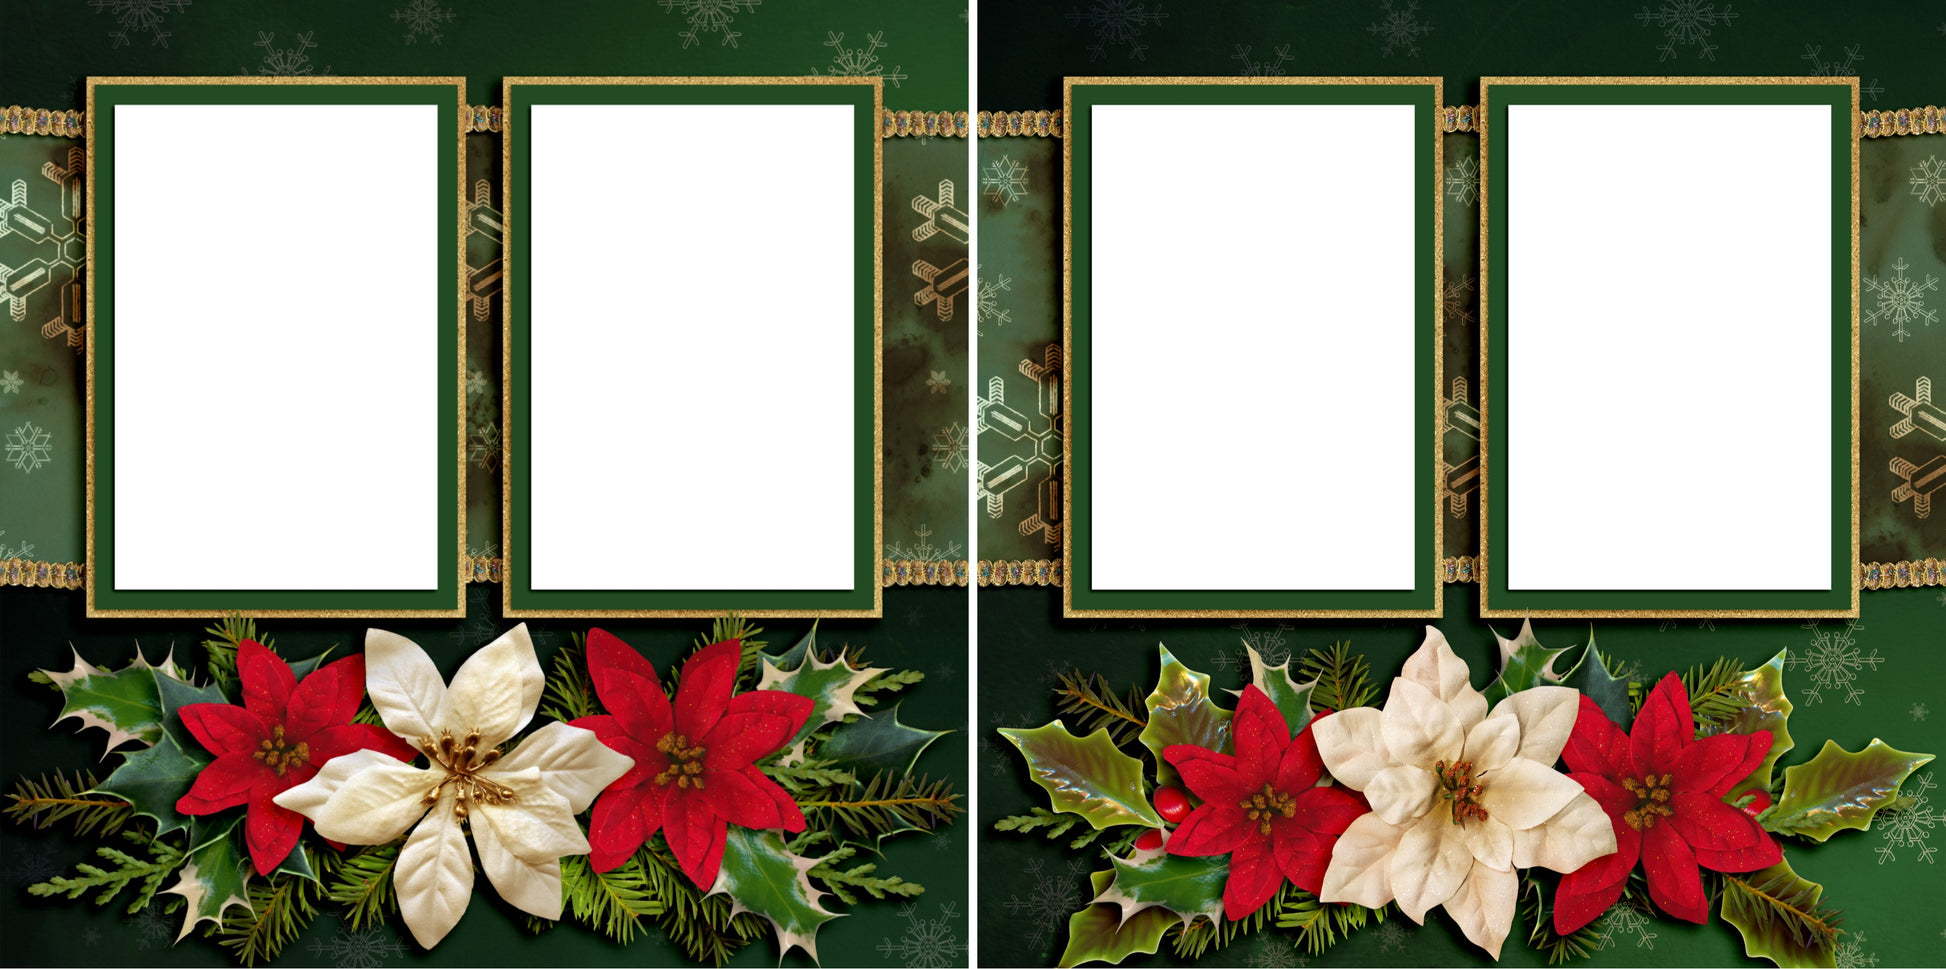 Green Cheer - Digital Scrapbook Pages - INSTANT DOWNLOAD - EZscrapbooks Scrapbook Layouts Christmas